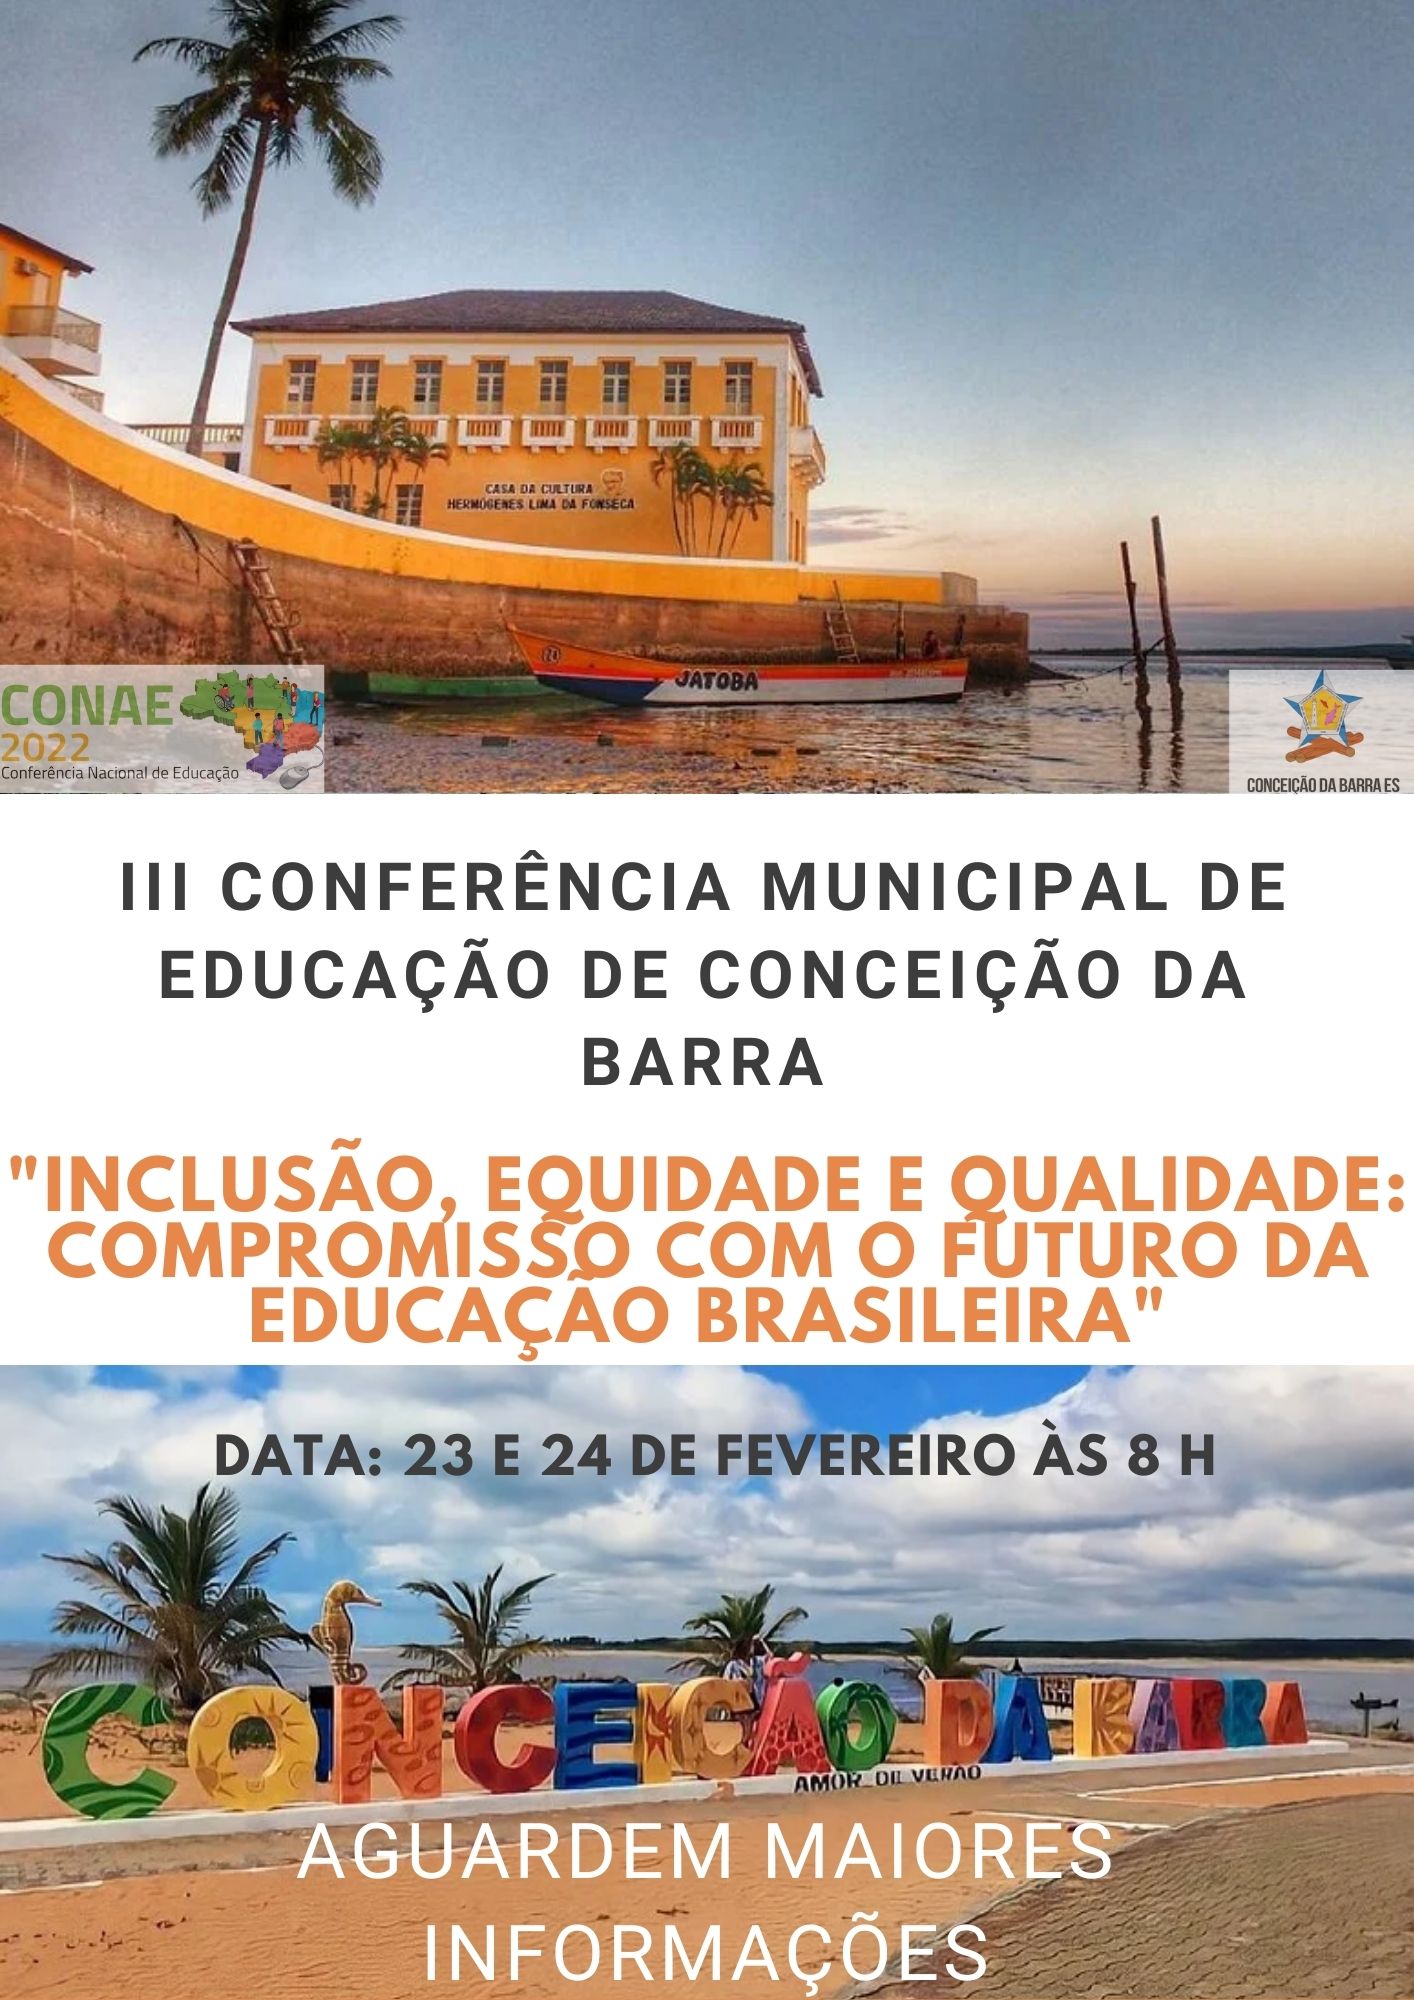 III CONFERÊNCIA MUNICIPAL DE EDUCAÇÃO DE CONCEIÇÃO DA BARRA